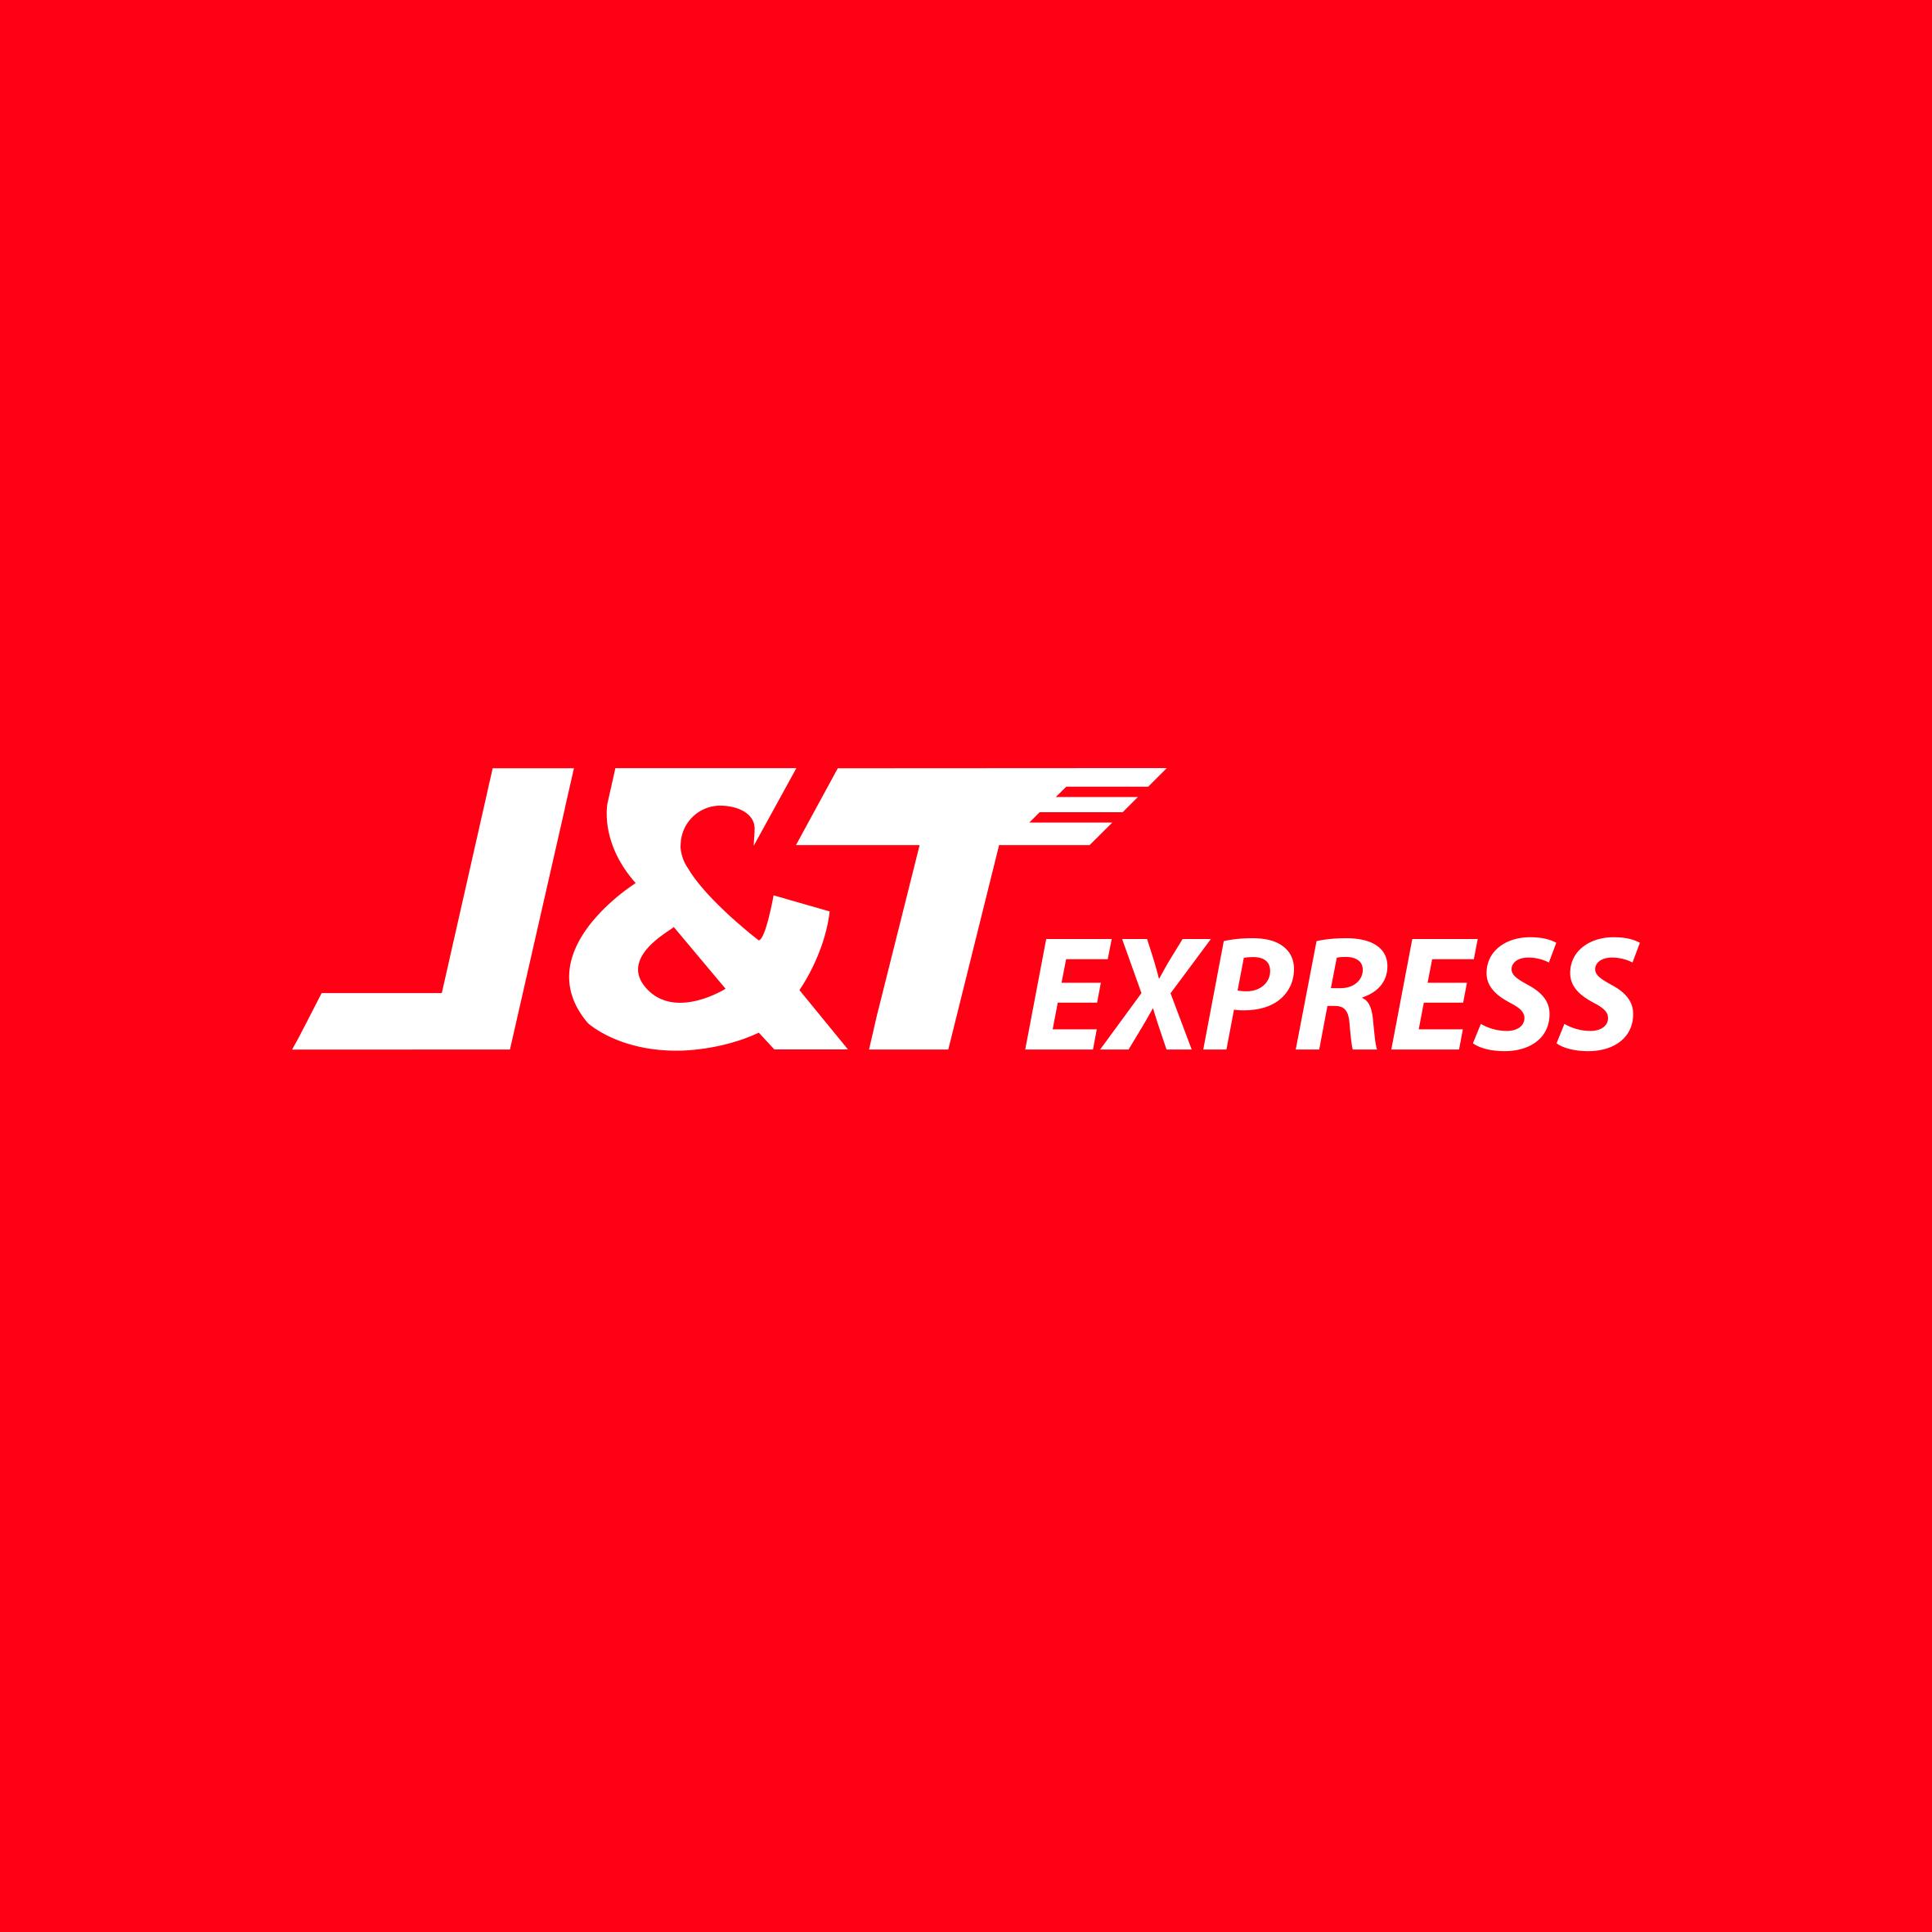 J&T Express (M) Sdn Bhd